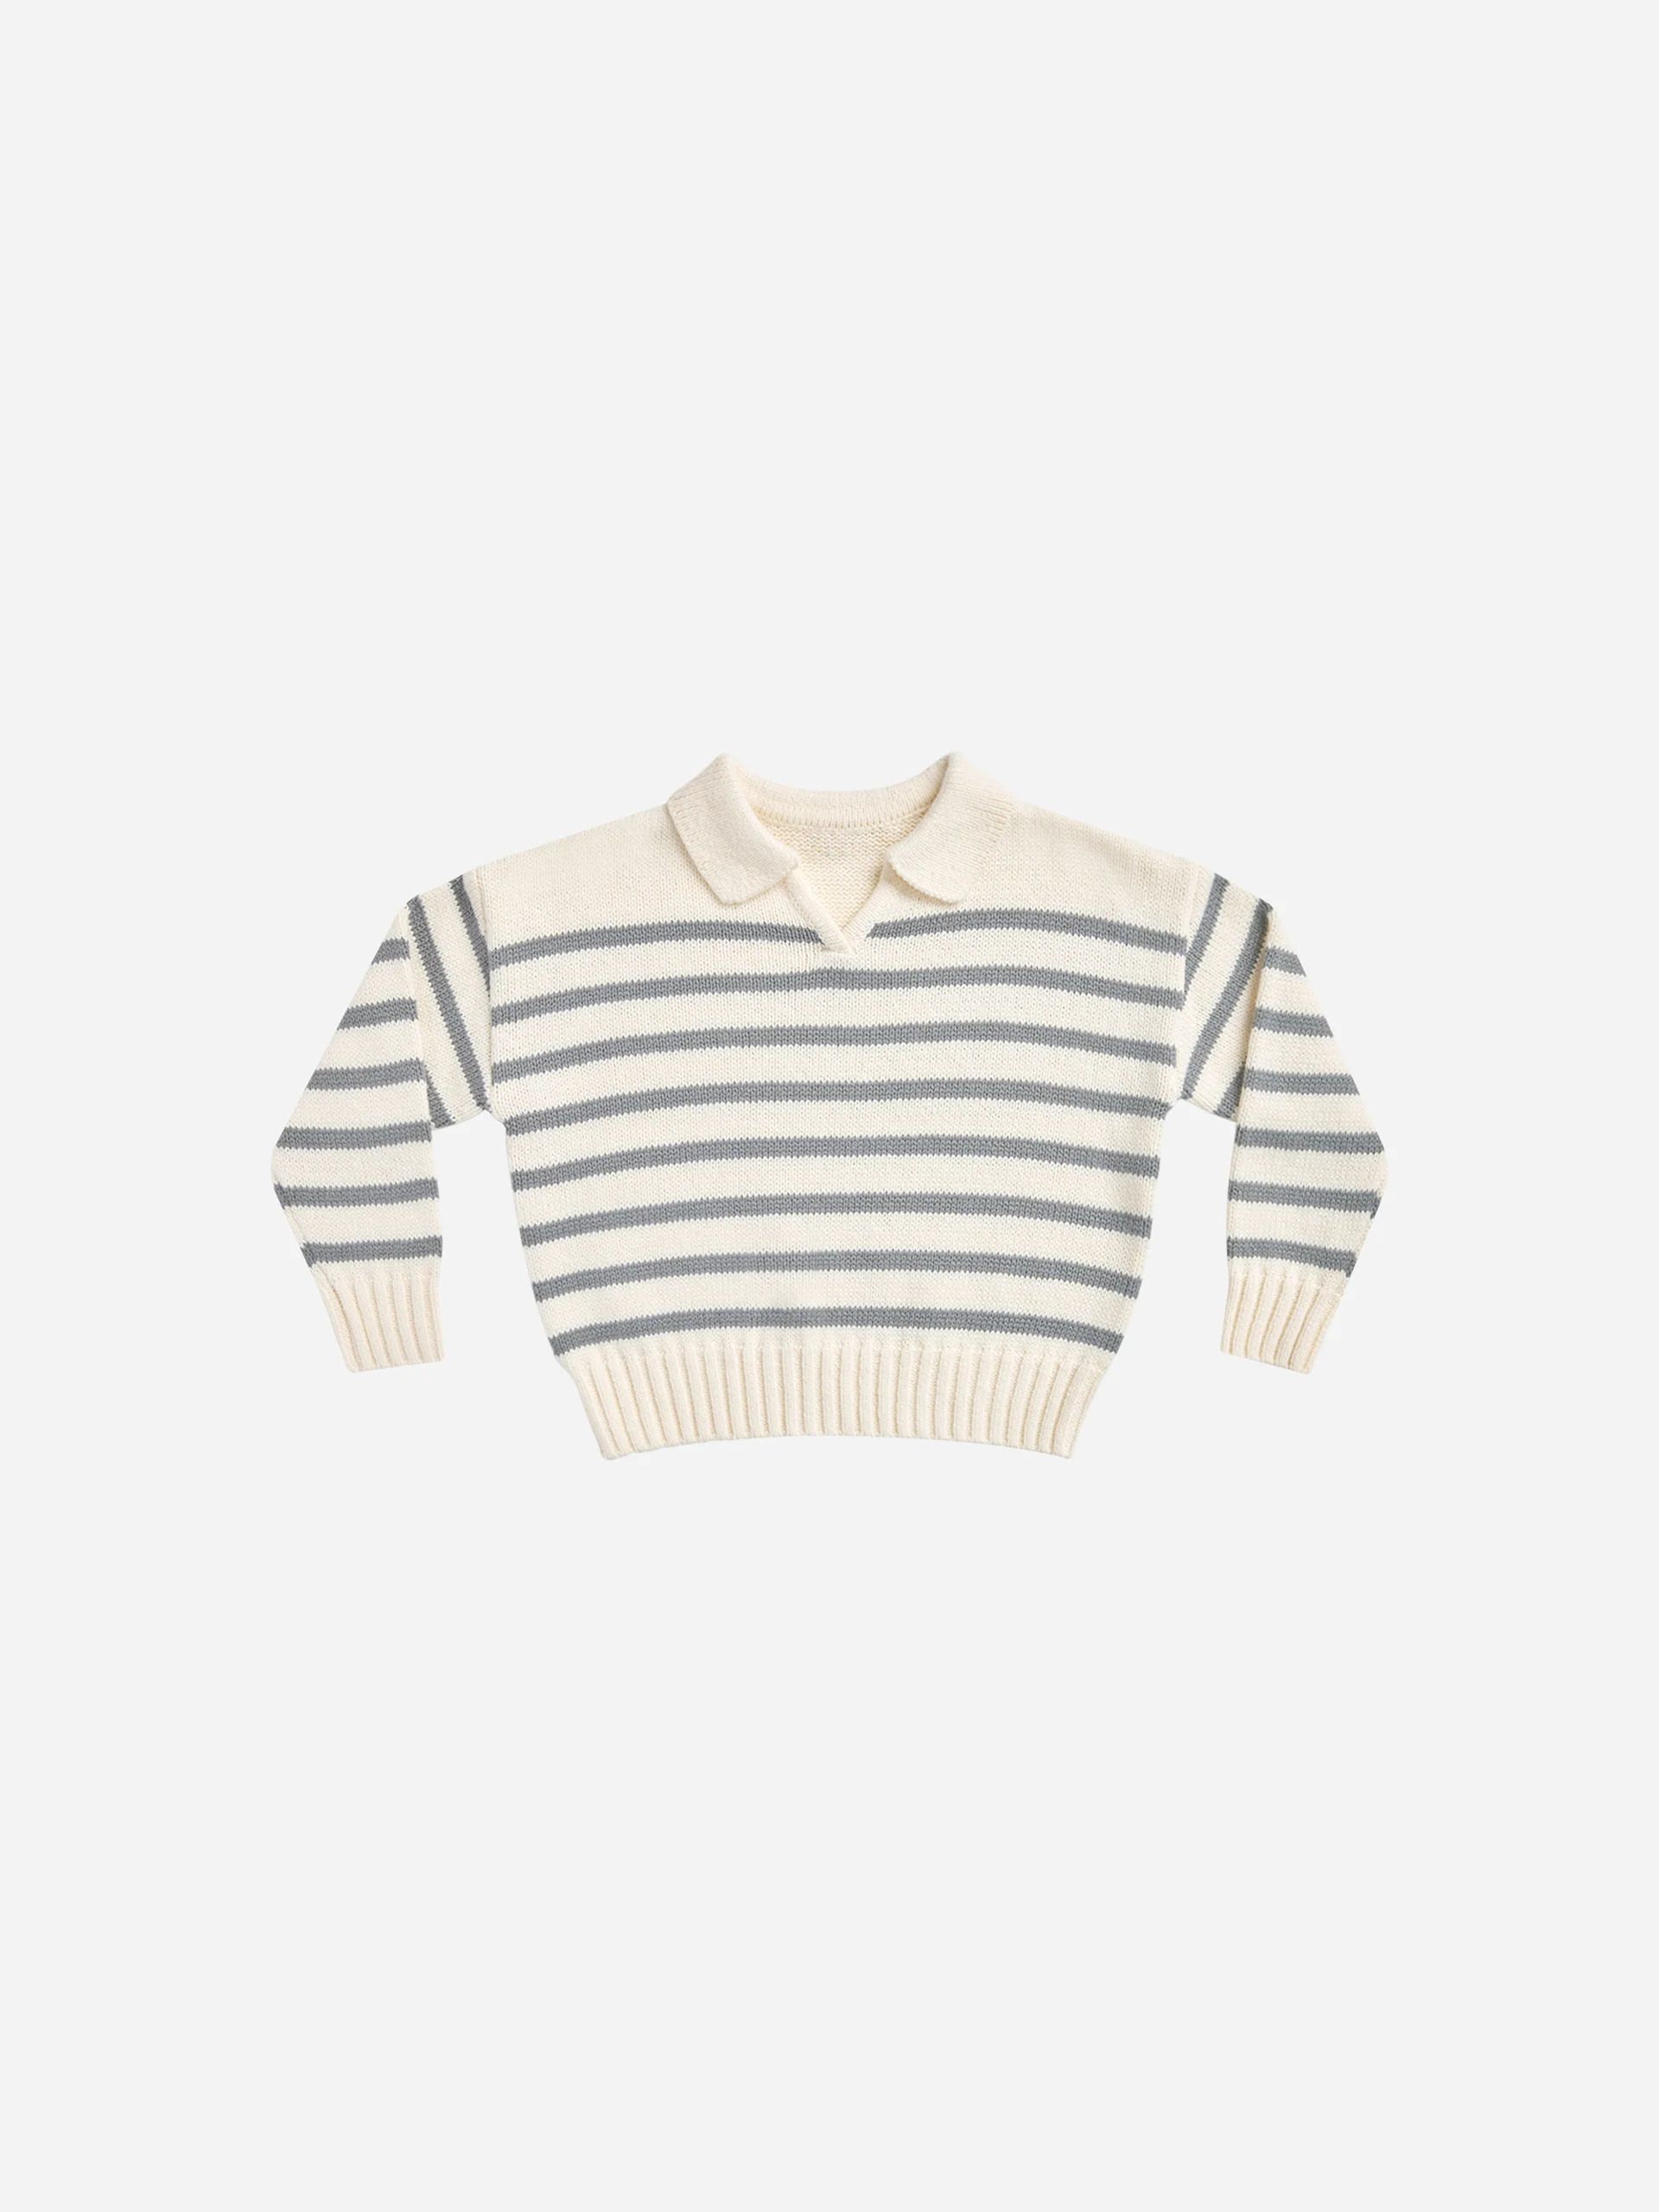 Collared Sweater || Stripe | Rylee + Cru